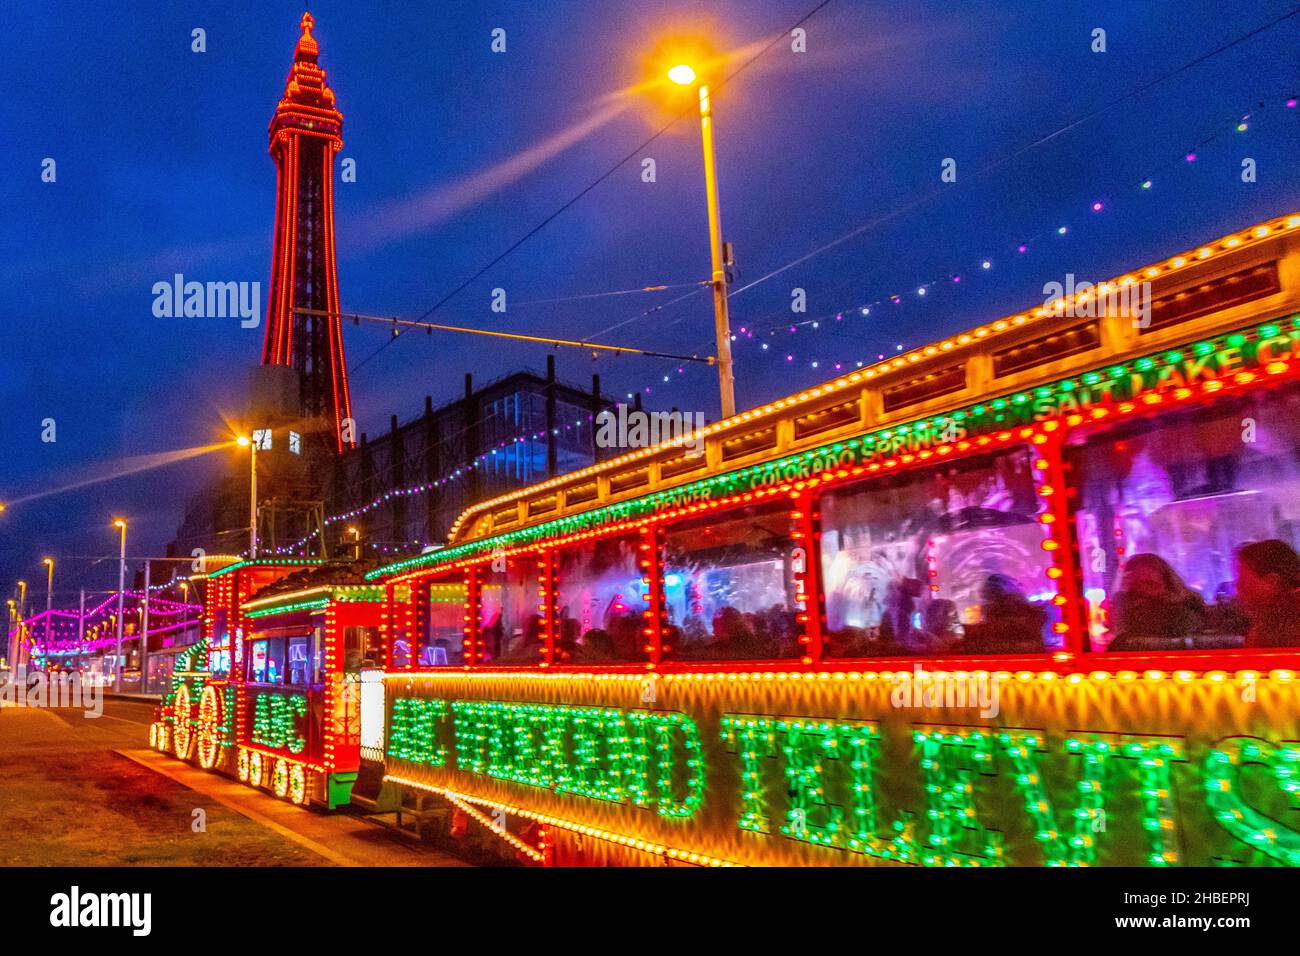 Illuminated Train, Blackpool Illuminations Stock Photo